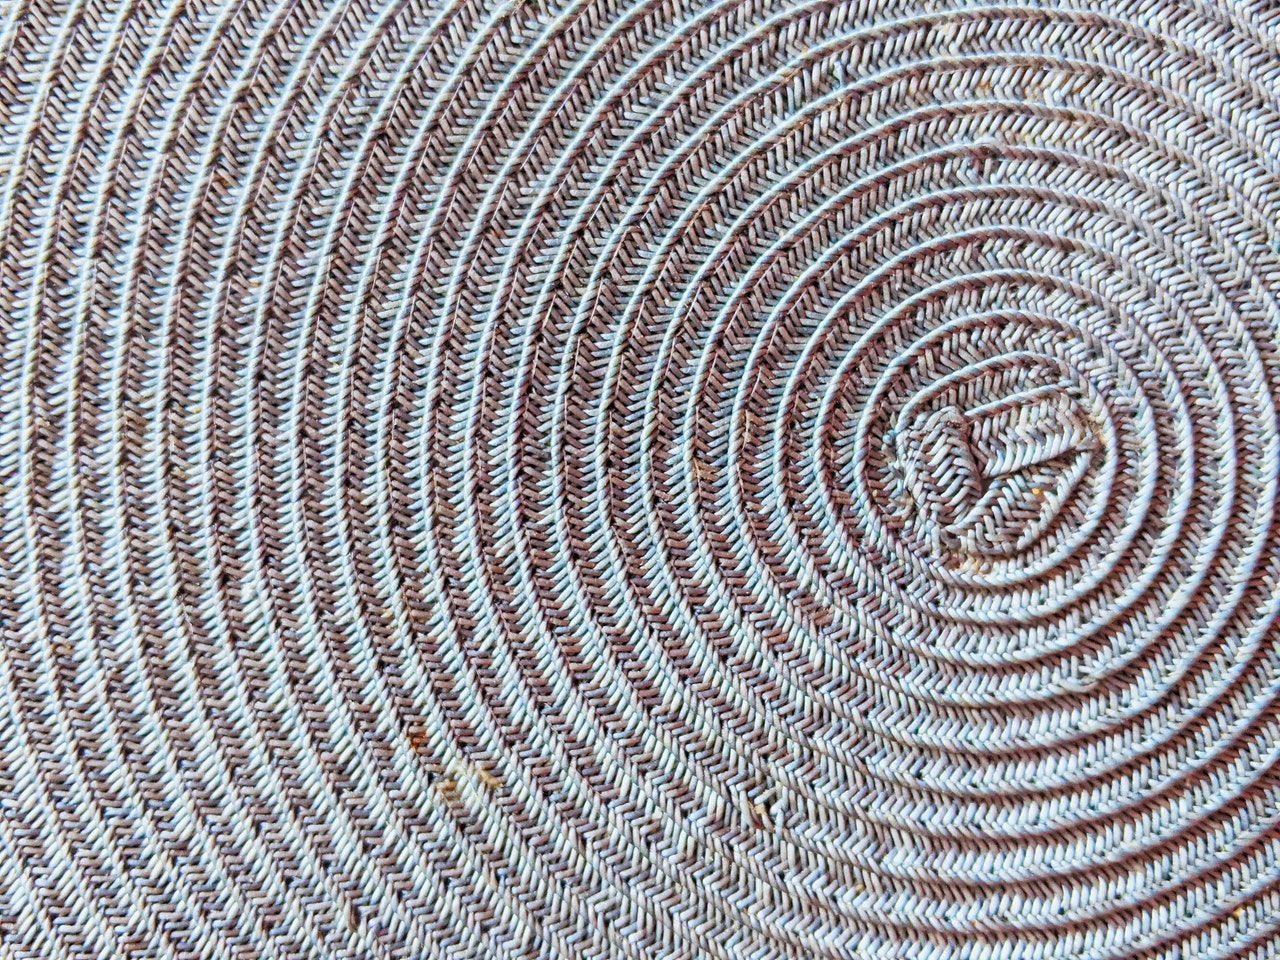 a woven spiral